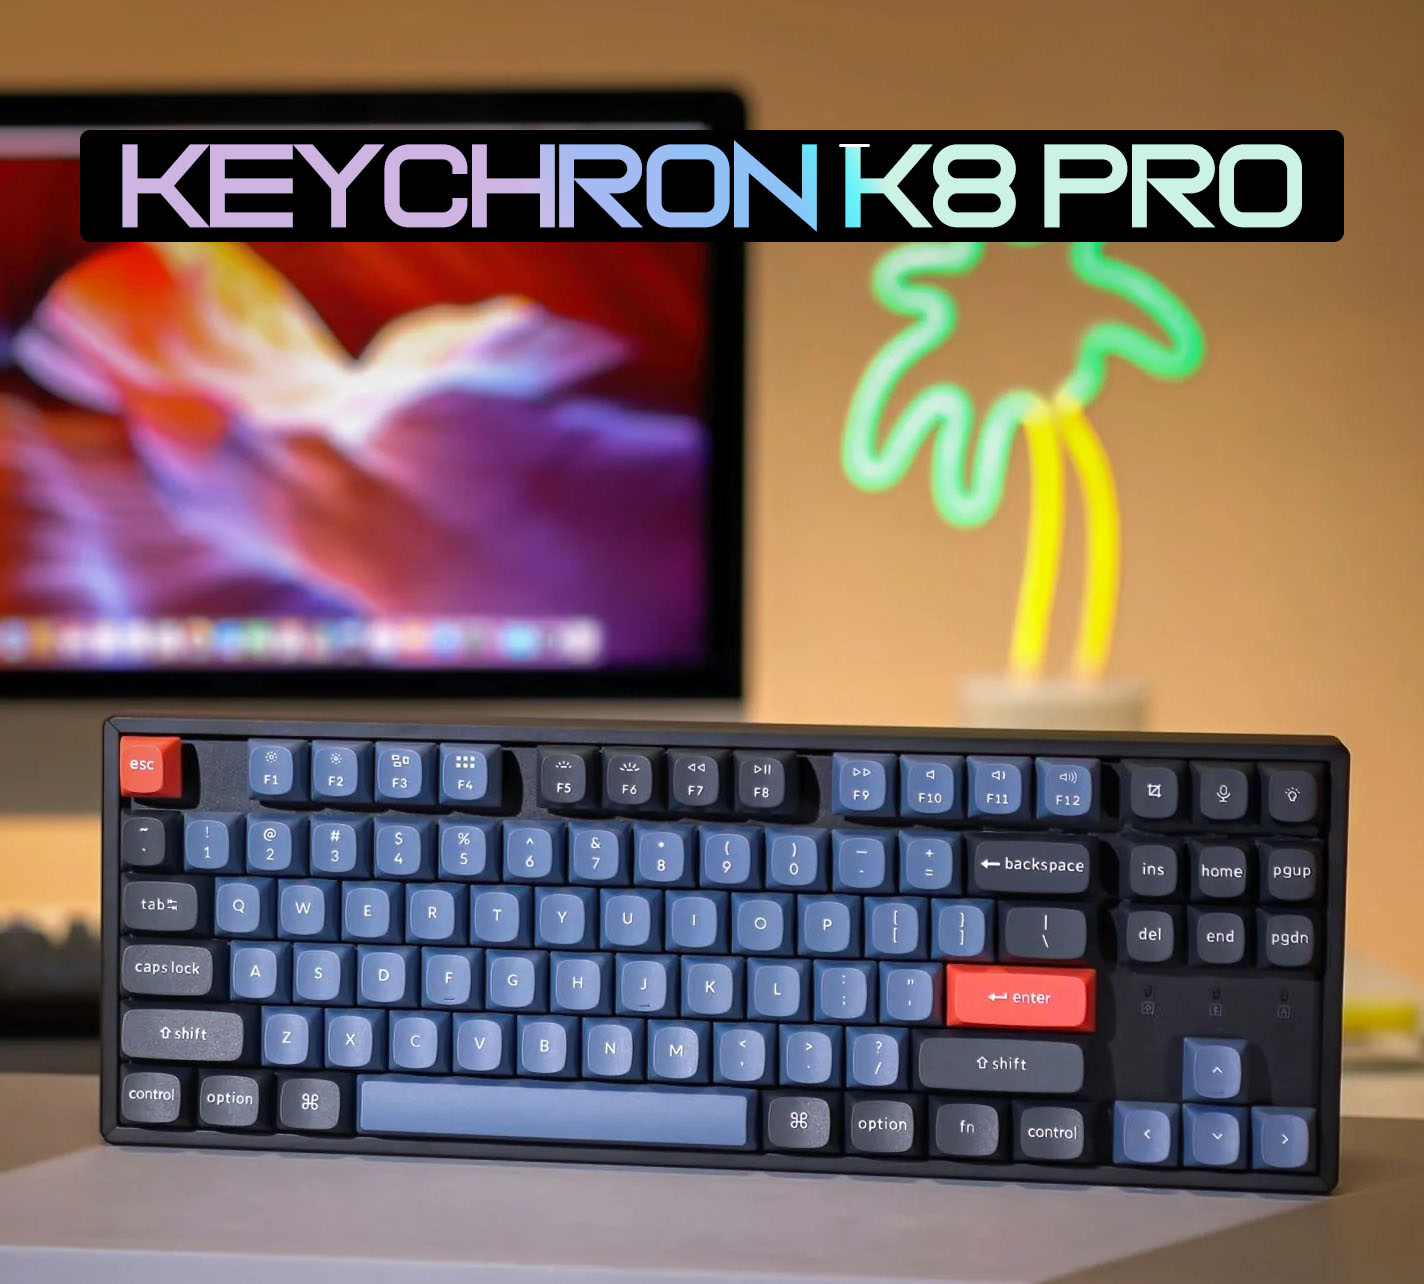 Keychron K8 Pro - Bàn phím cơ Keychron K8 Bản nhôm Hot Swap - Mạch xuôi, RGB, Hotswap